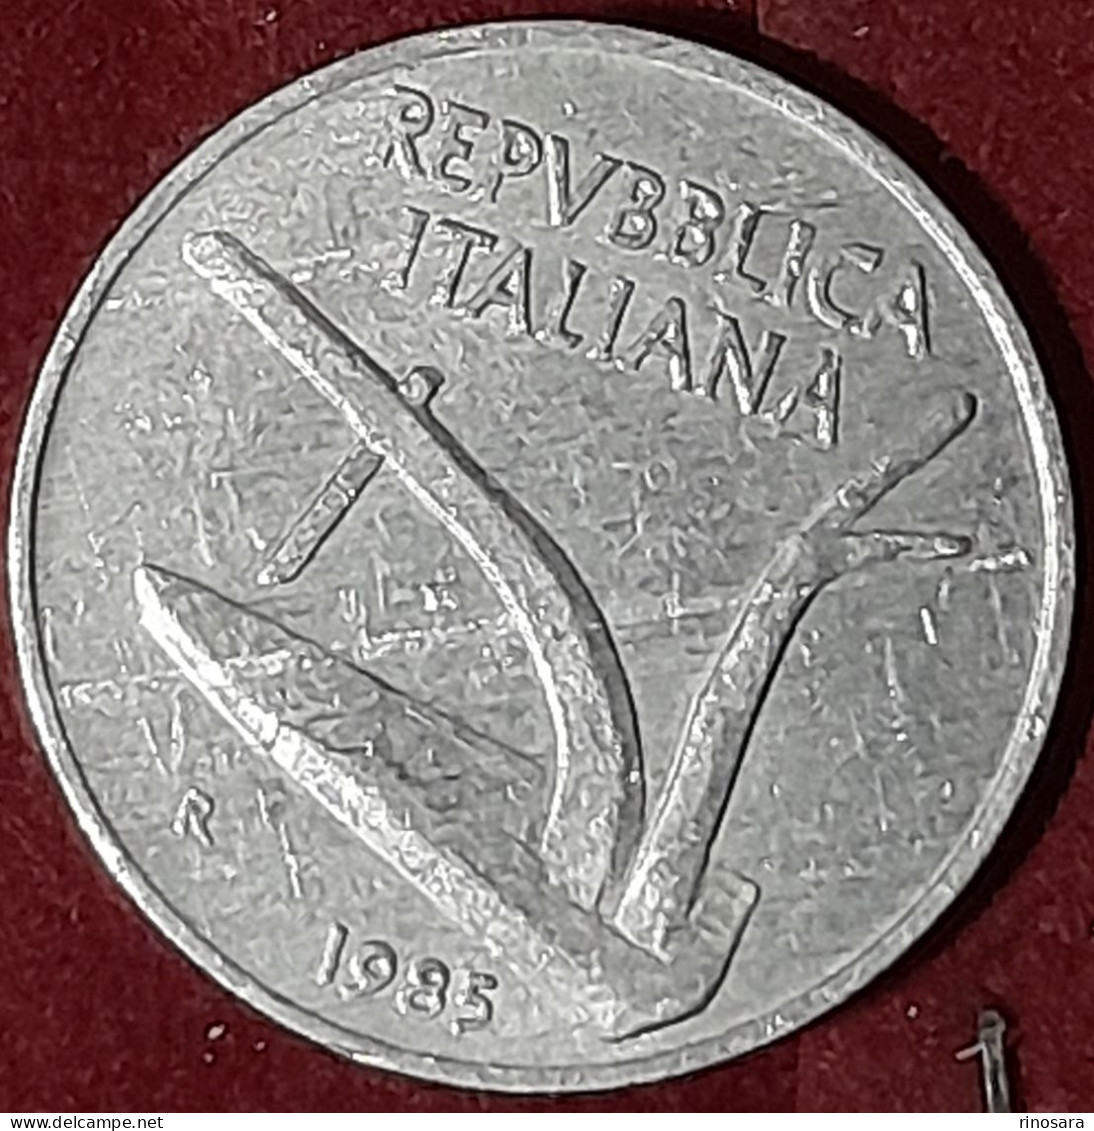 Errore Di Conio 10 Lire 1985 Repubblica Italiana - Varietà E Curiosità